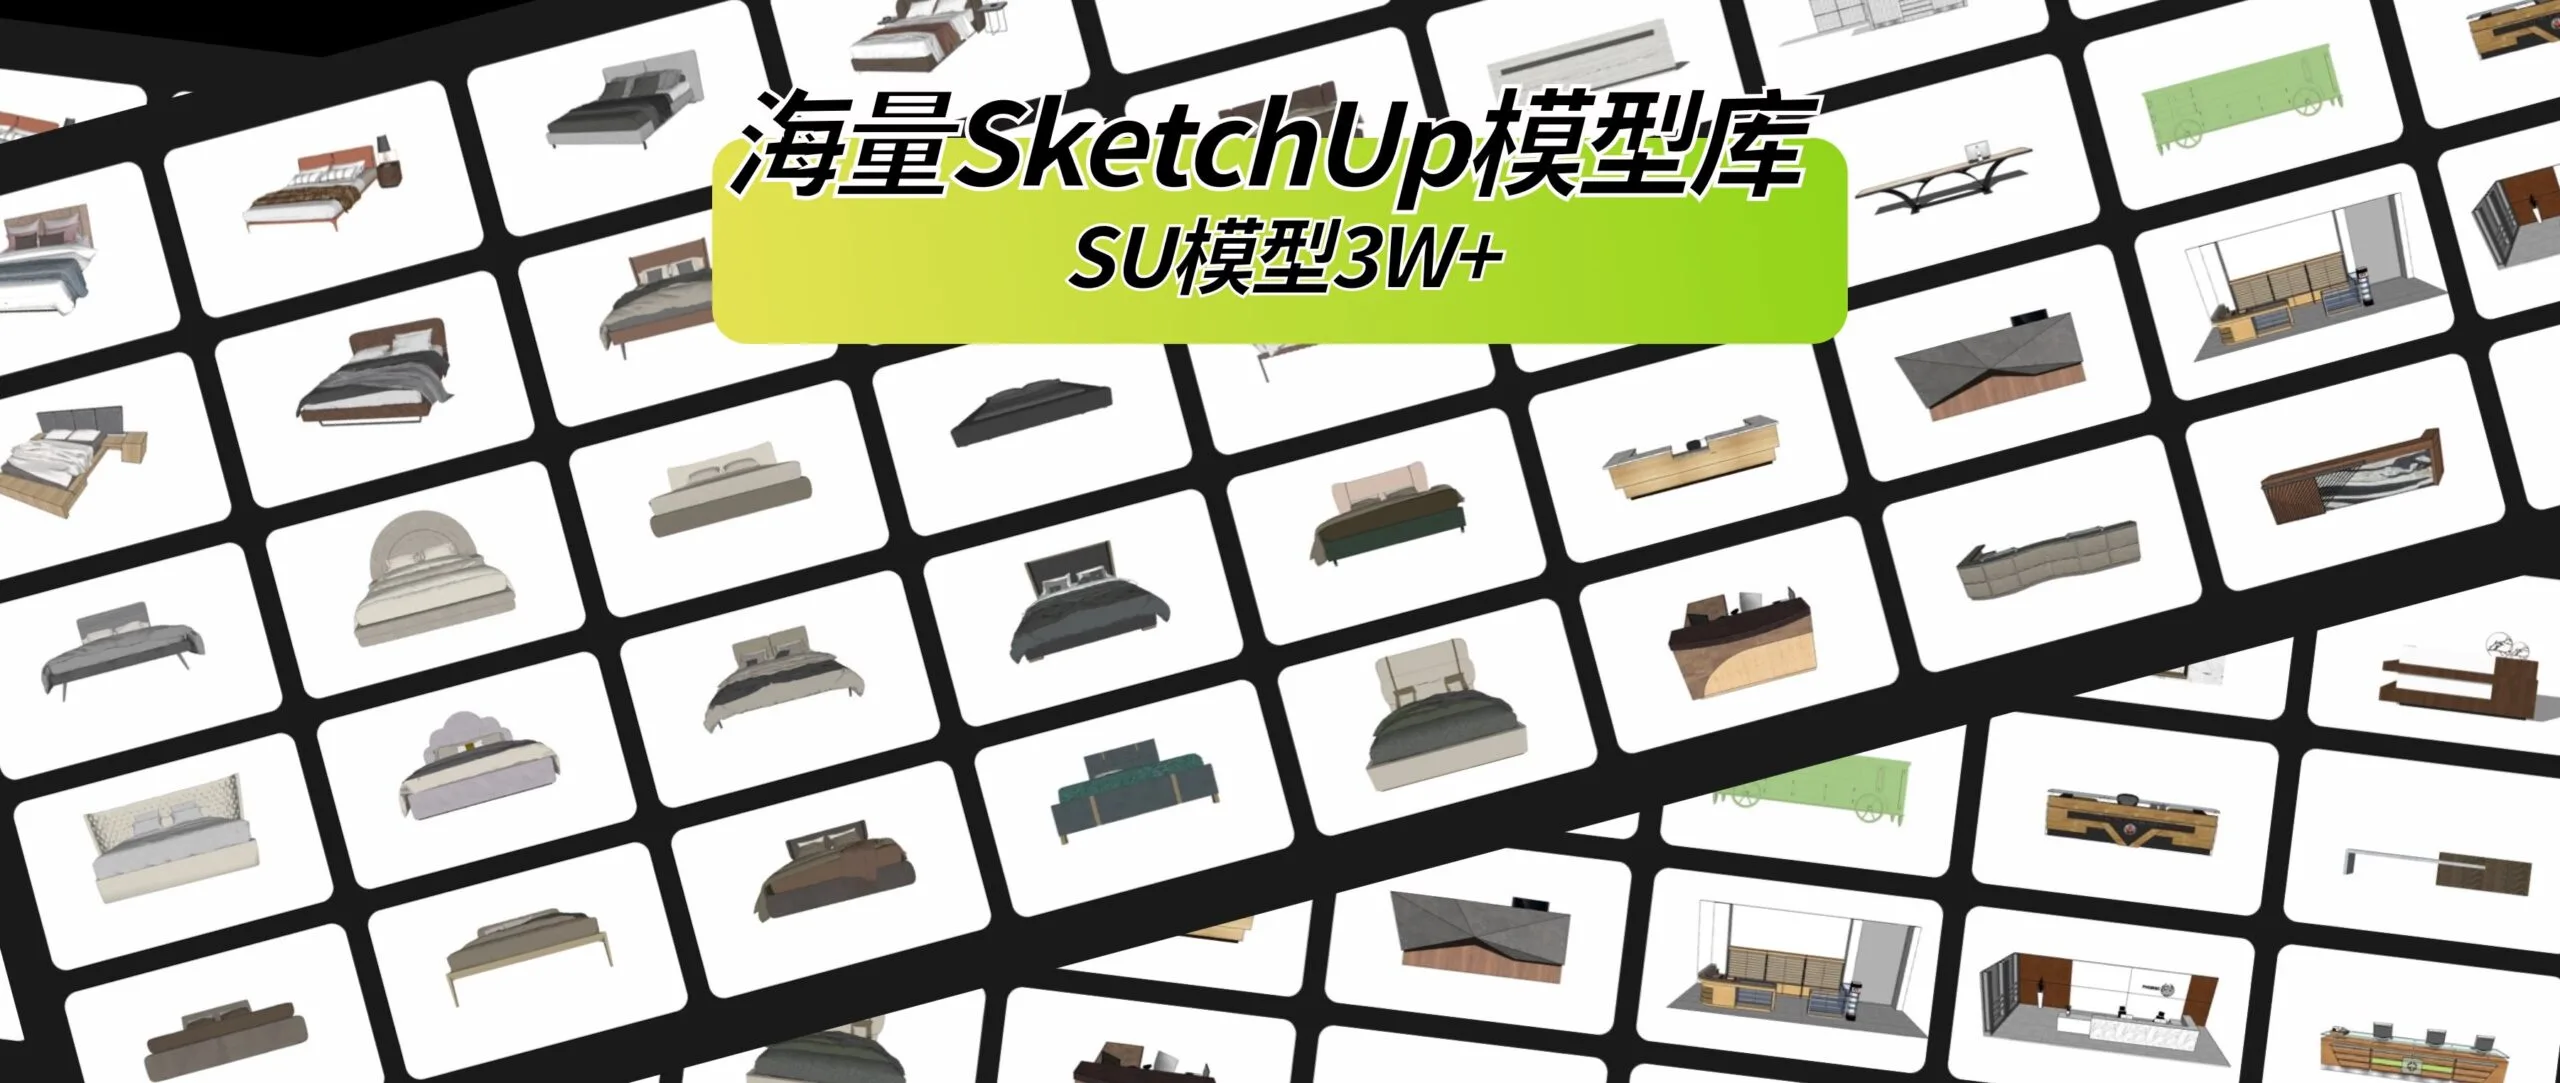 海量SketchUp模型库